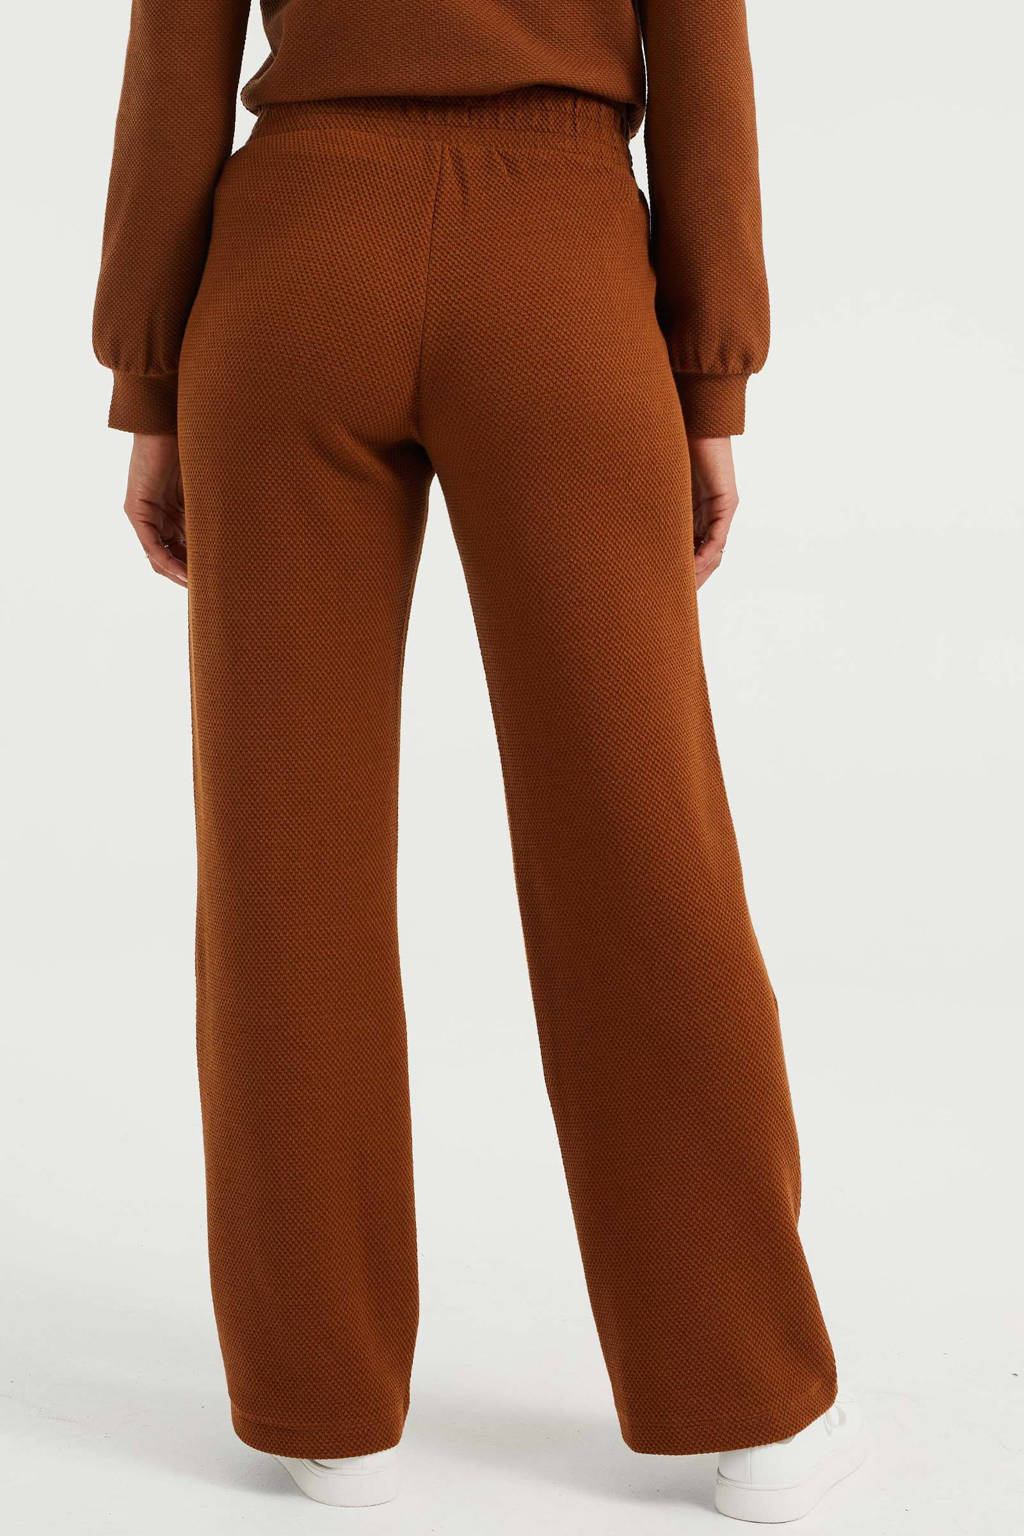 Ontwikkelen compleet onszelf WE Fashion wide leg broek met textuur bruin | wehkamp